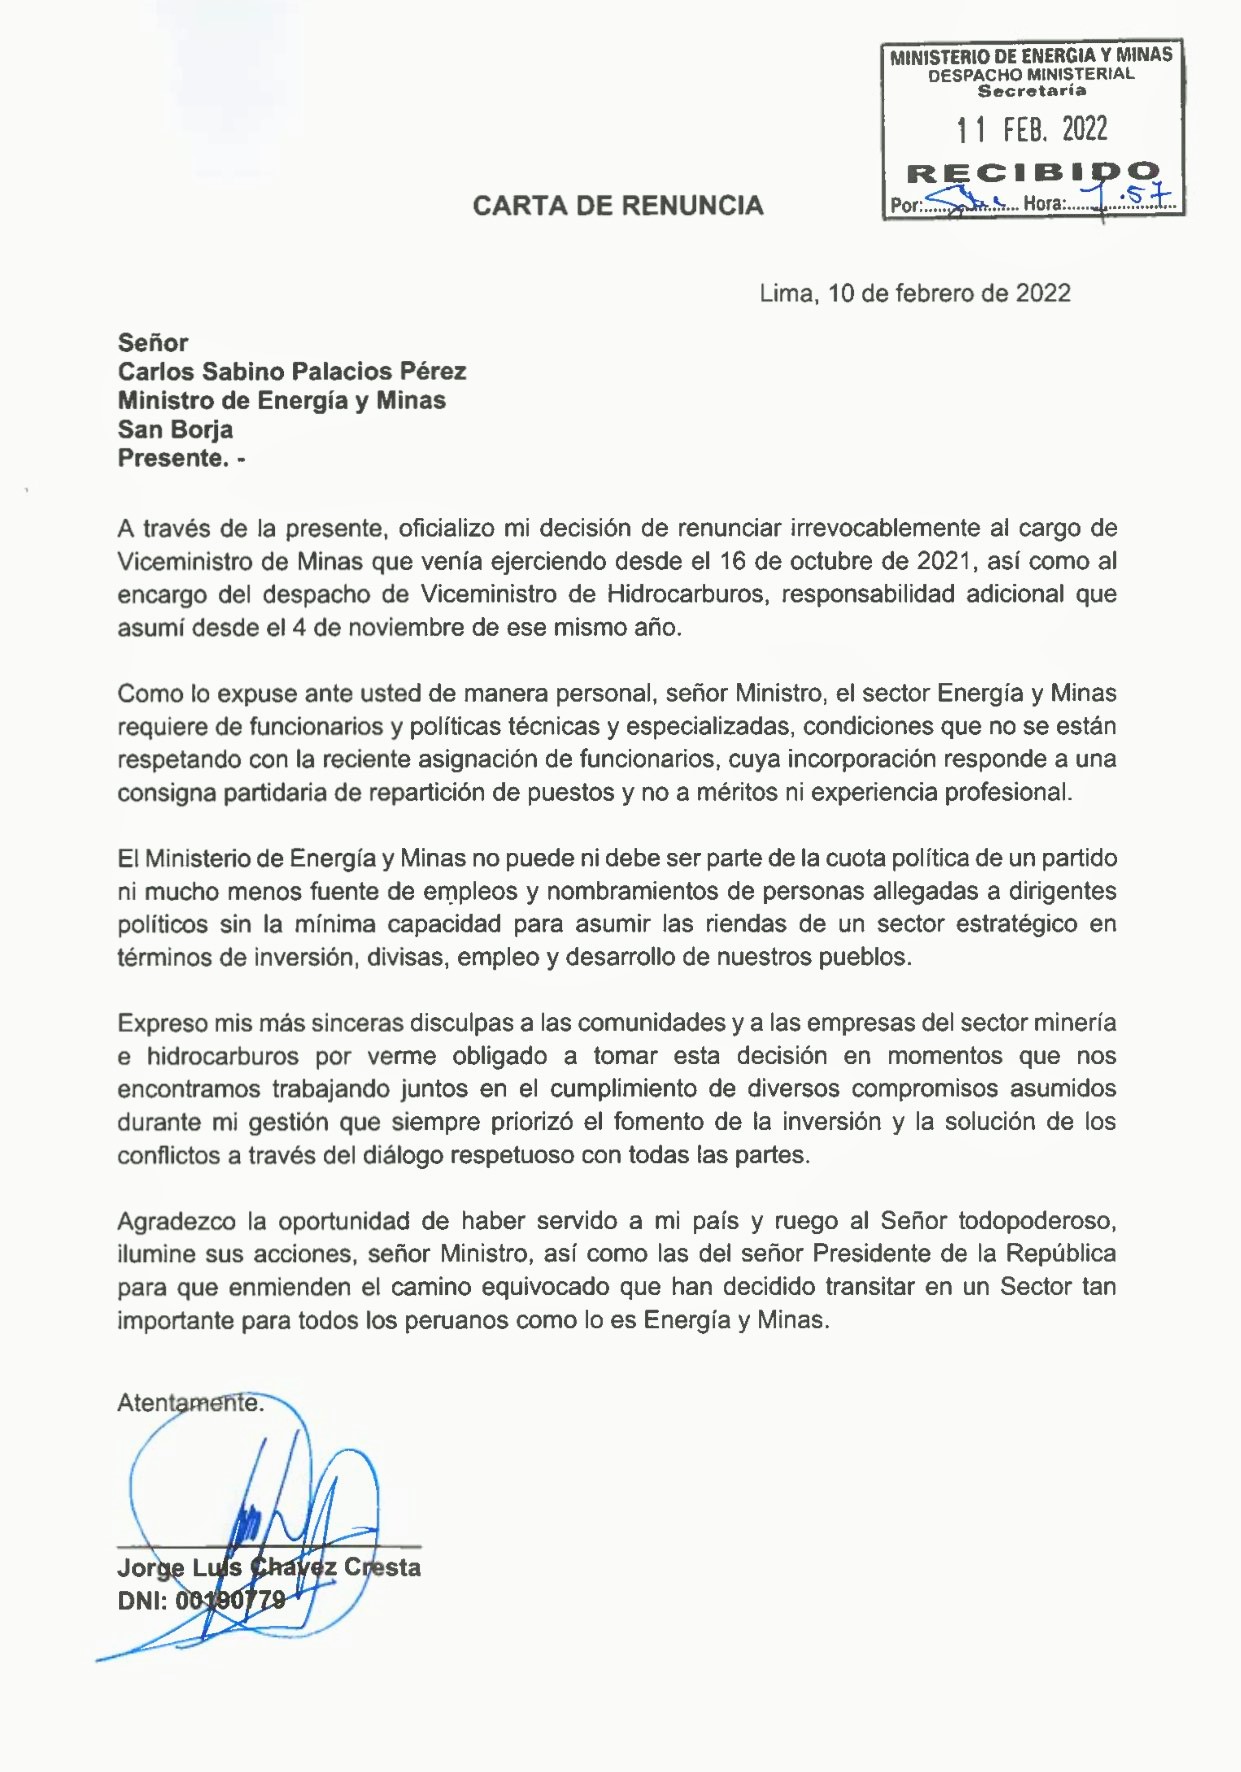 Jorge Chávez renuncia a viceministerio de Energía y Minas por haberse convertido el Minem en cuota política